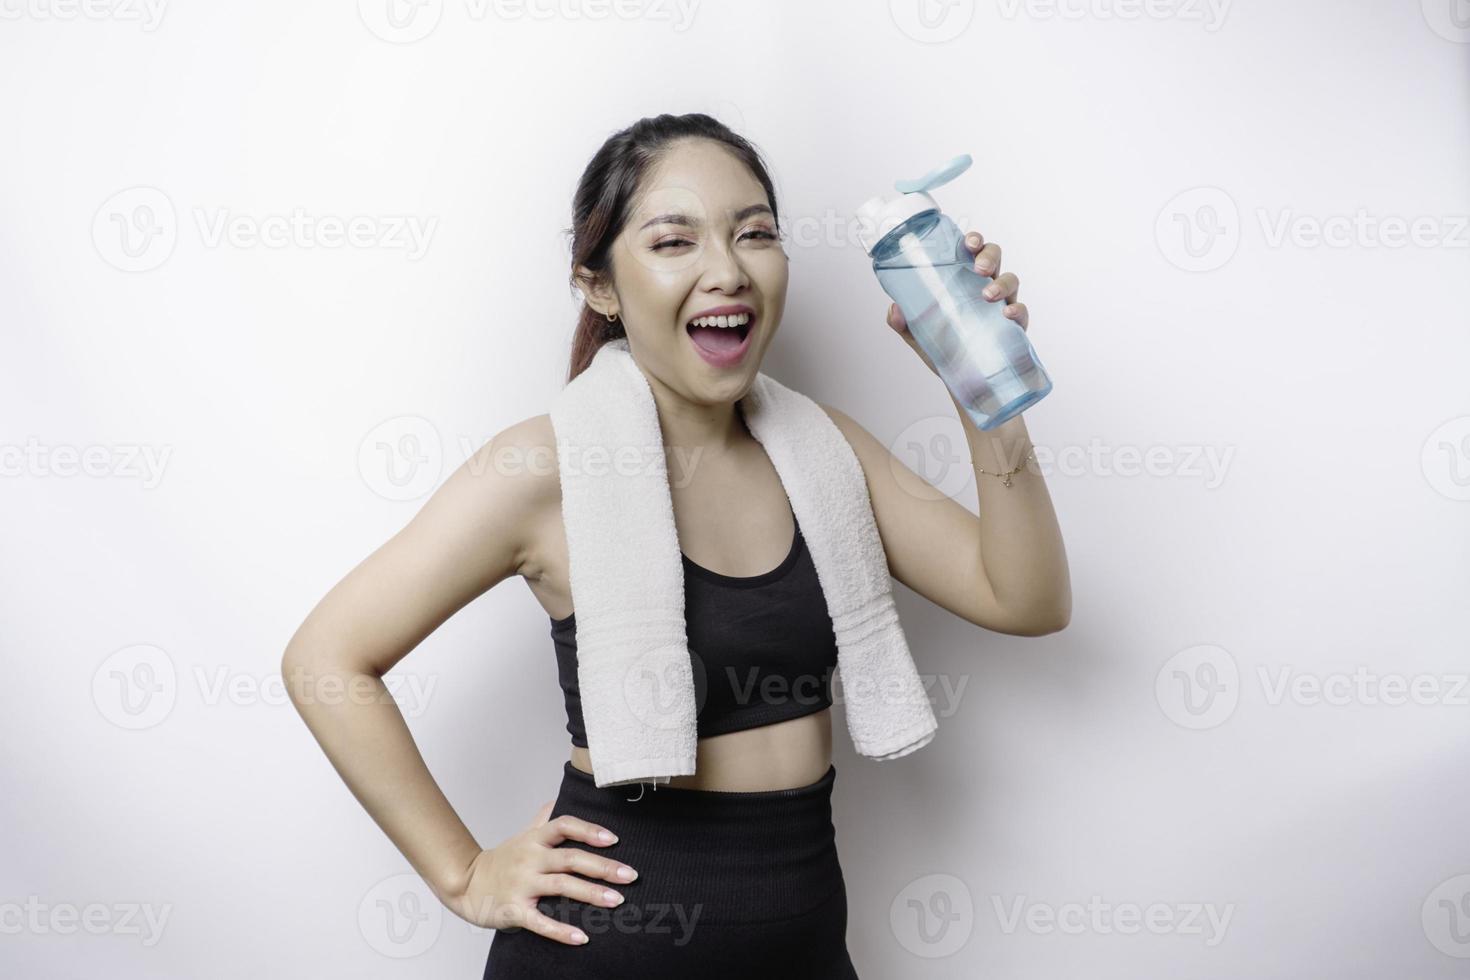 sportliche asiatin posiert mit einem handtuch auf der schulter und hält eine flasche wasser, lächelt und entspannt sich nach dem training foto